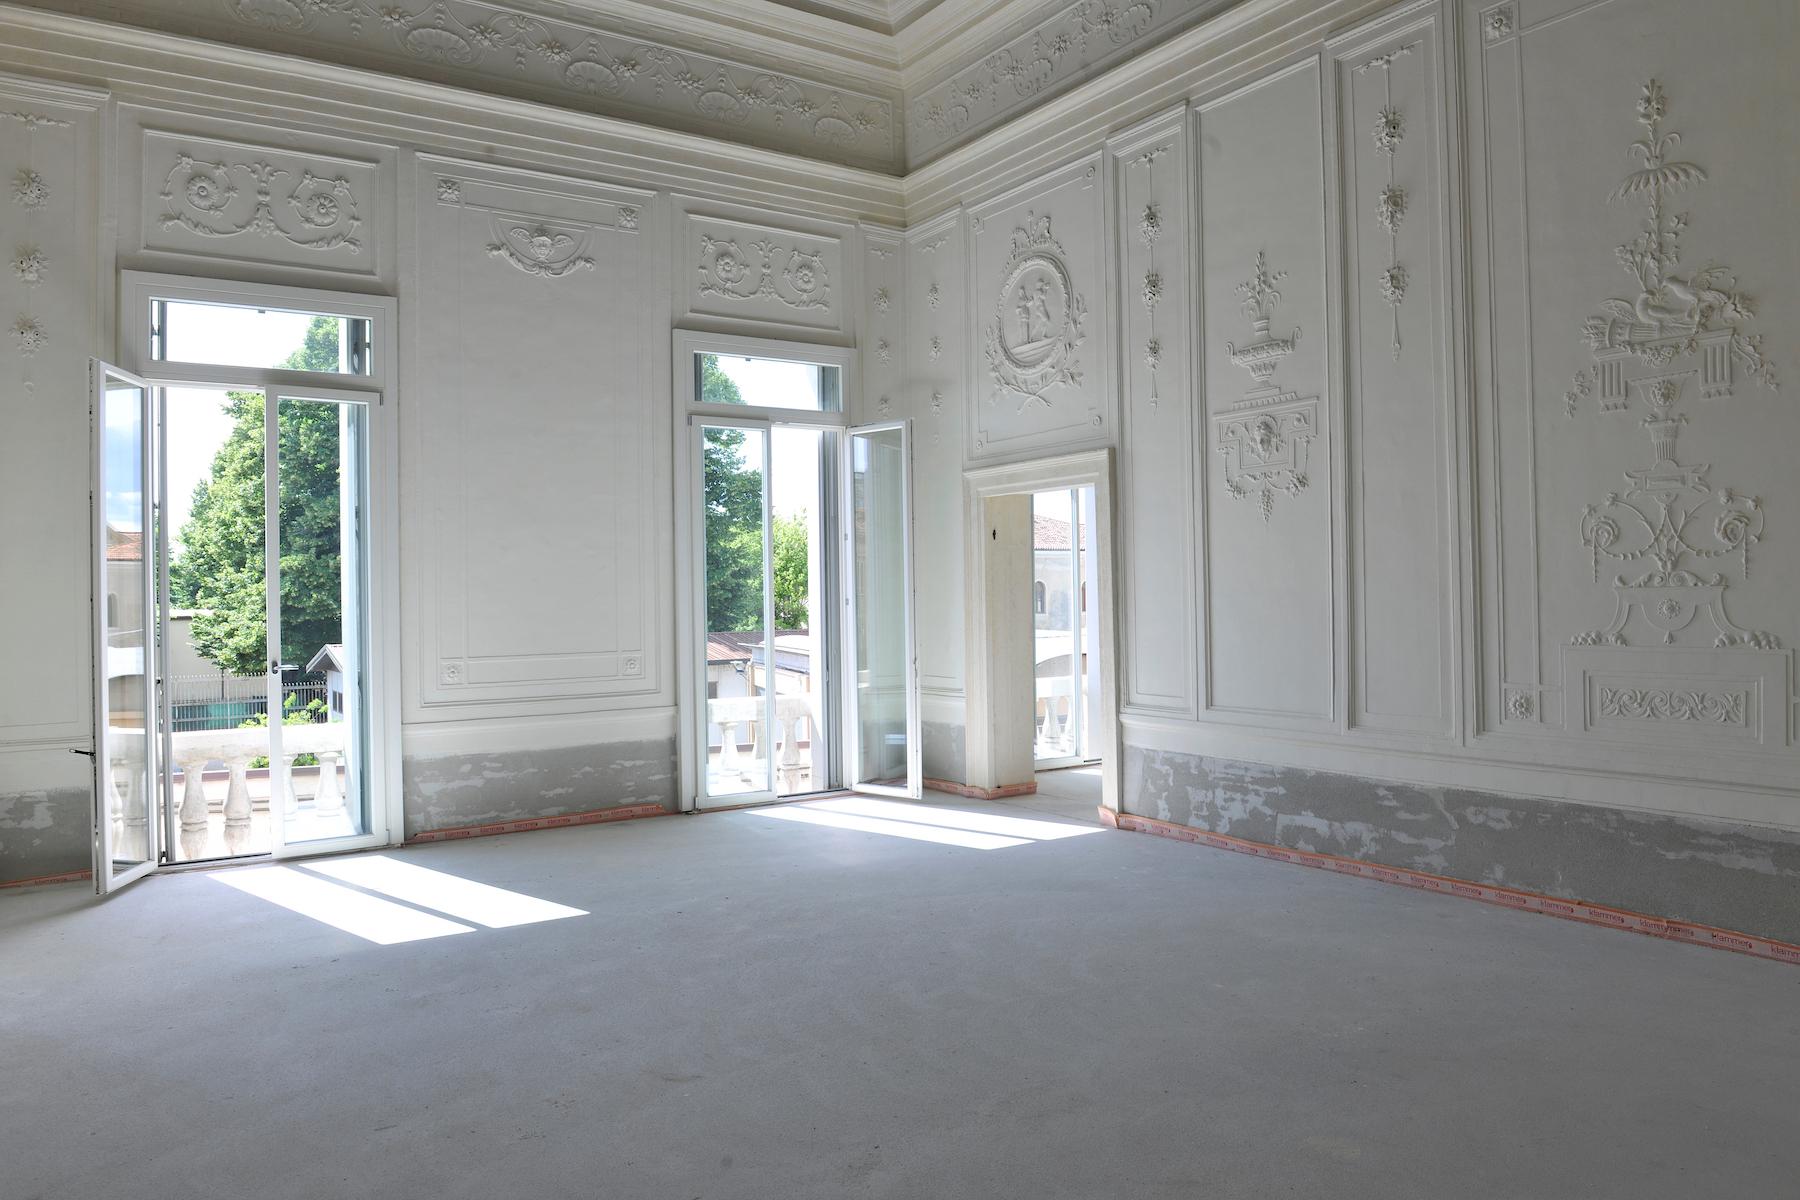 Palazzo Bonin Schiavetto im Herzen Vicenza - 13